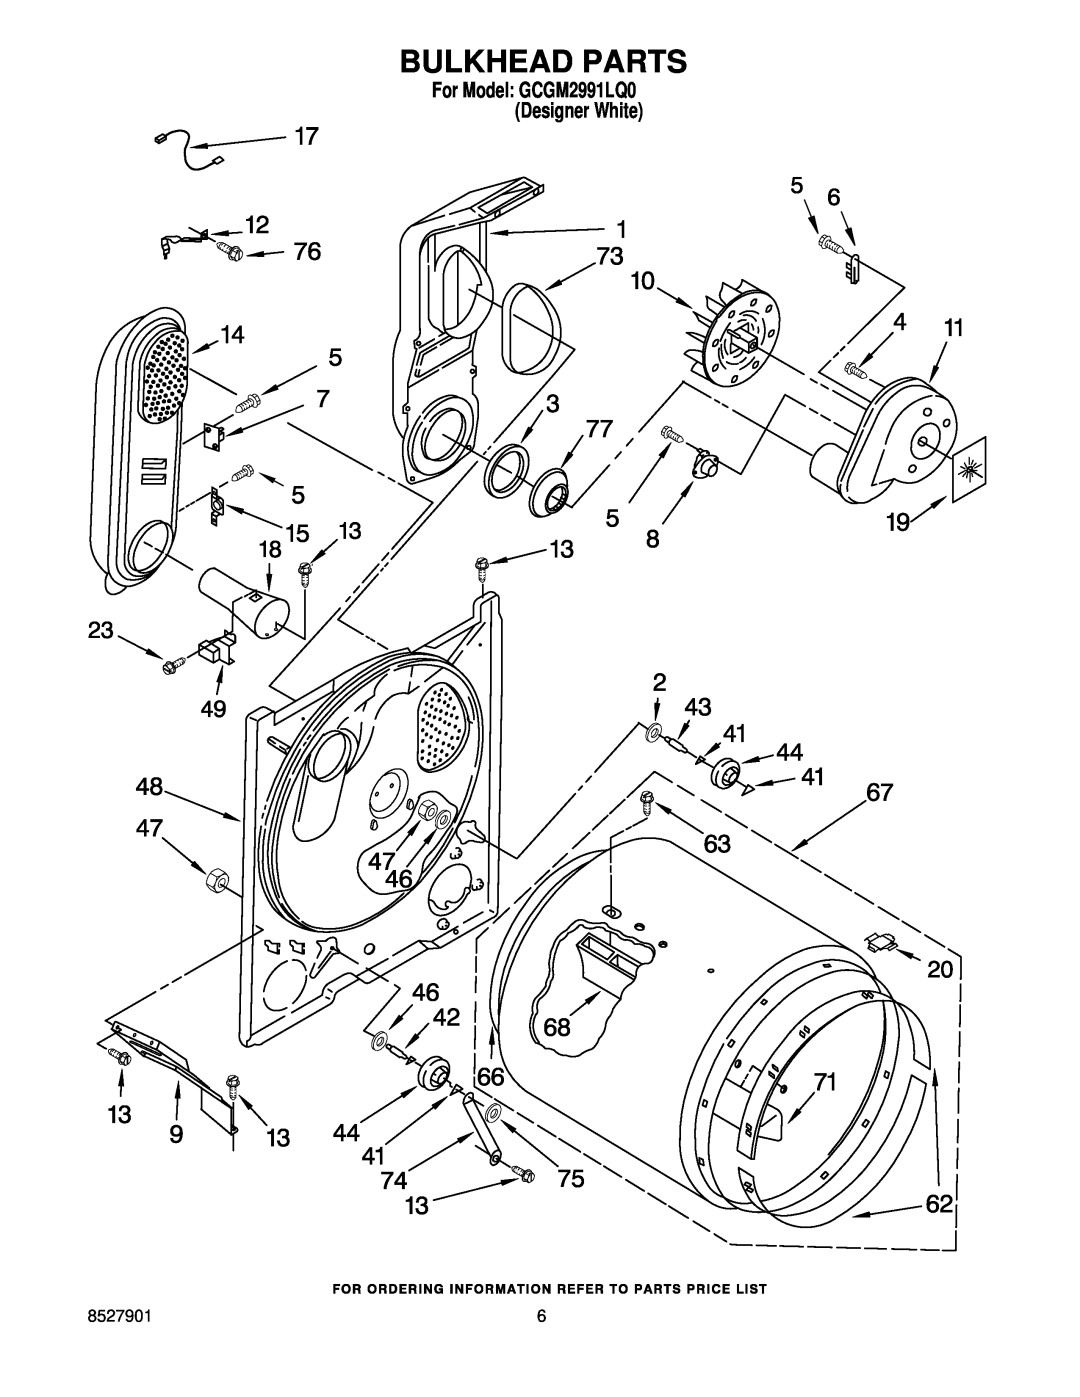 Whirlpool manual Bulkhead Parts, For Model GCGM2991LQ0 Designer White 